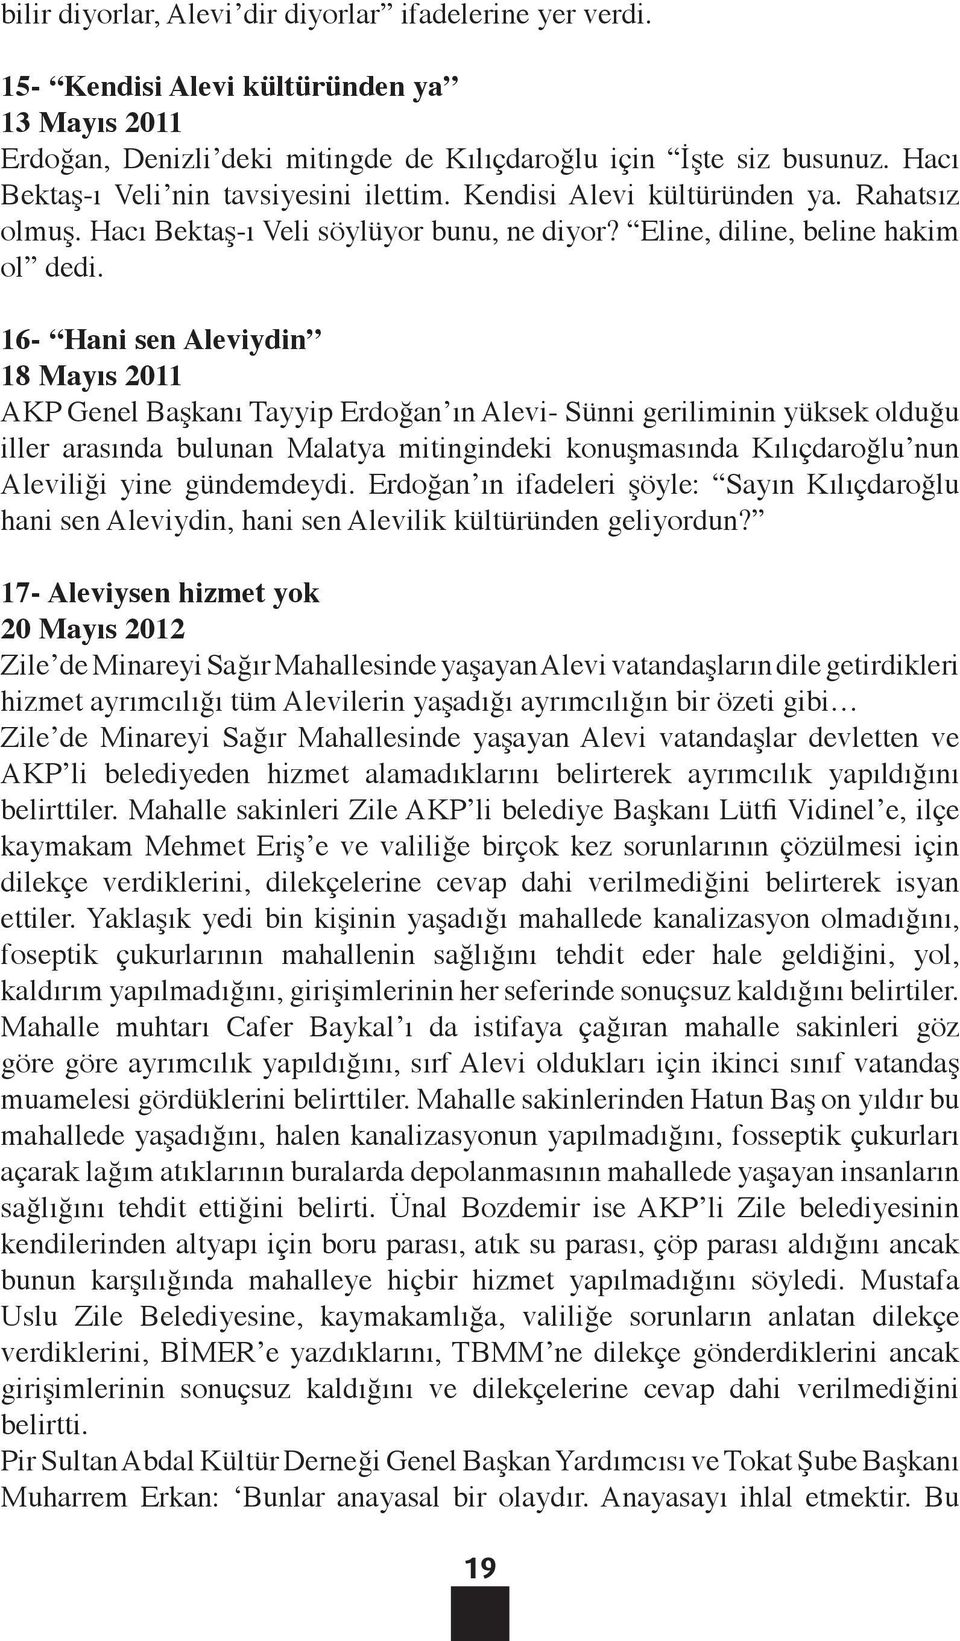 16- Hani sen Aleviydin 18 Mayıs 2011 AKP Genel Başkanı Tayyip Erdoğan ın Alevi- Sünni geriliminin yüksek olduğu iller arasında bulunan Malatya mitingindeki konuşmasında Kılıçdaroğlu nun Aleviliği